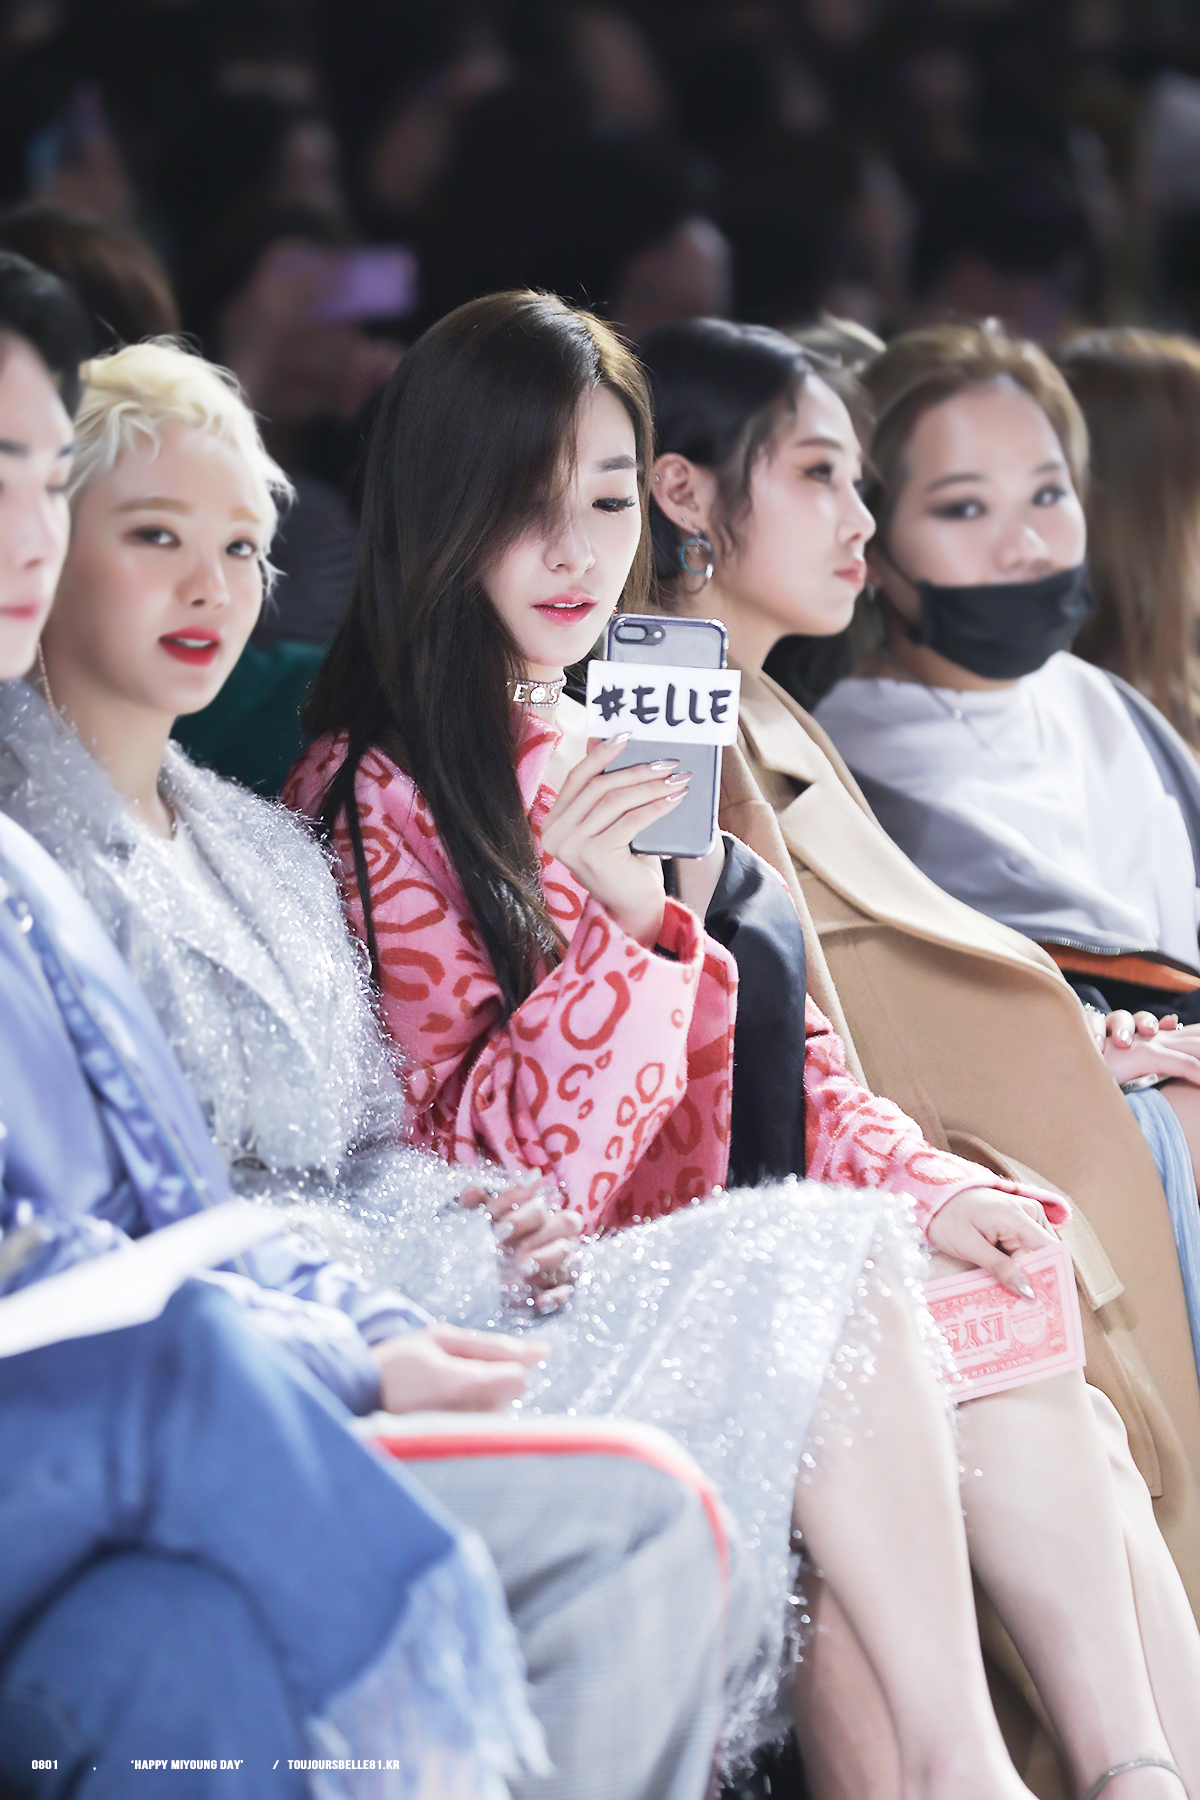  [PIC][29-03-2017]Tiffany và HyoYeon tham dự sự kiện ra mắt BST Thu - Đông của thương hiệu "KYE" trong khuôn khổ "2017 S/S HERA Seoul Fashion Week" vào chiều nay - Page 3 36252022396_09e4b297f1_o